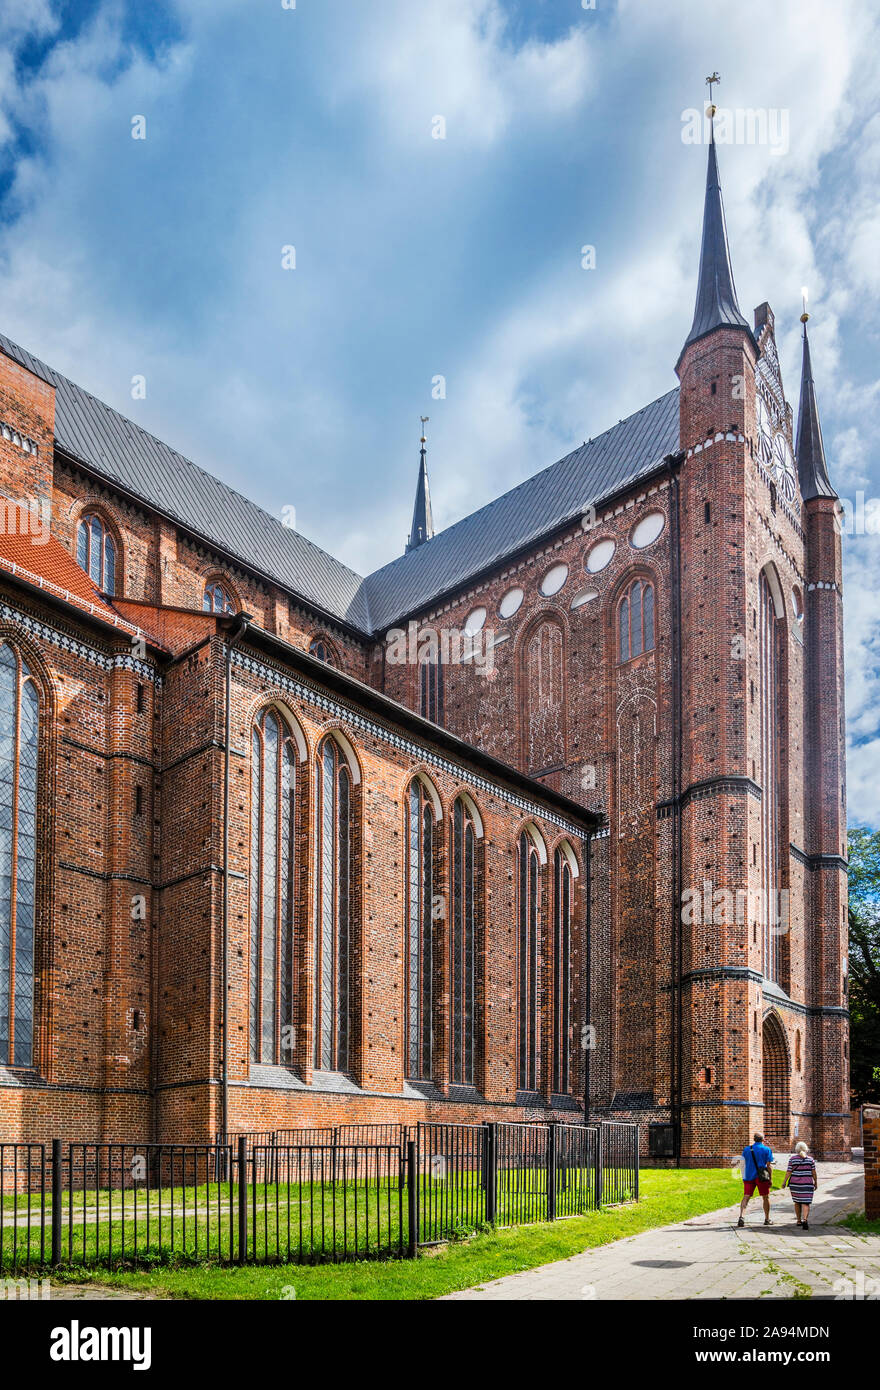 Vue sur le transept sud de St George's Church Wismar, une brique médiévale reconstruit l'architecture gothique, qui a été endommagé substancially durin Banque D'Images